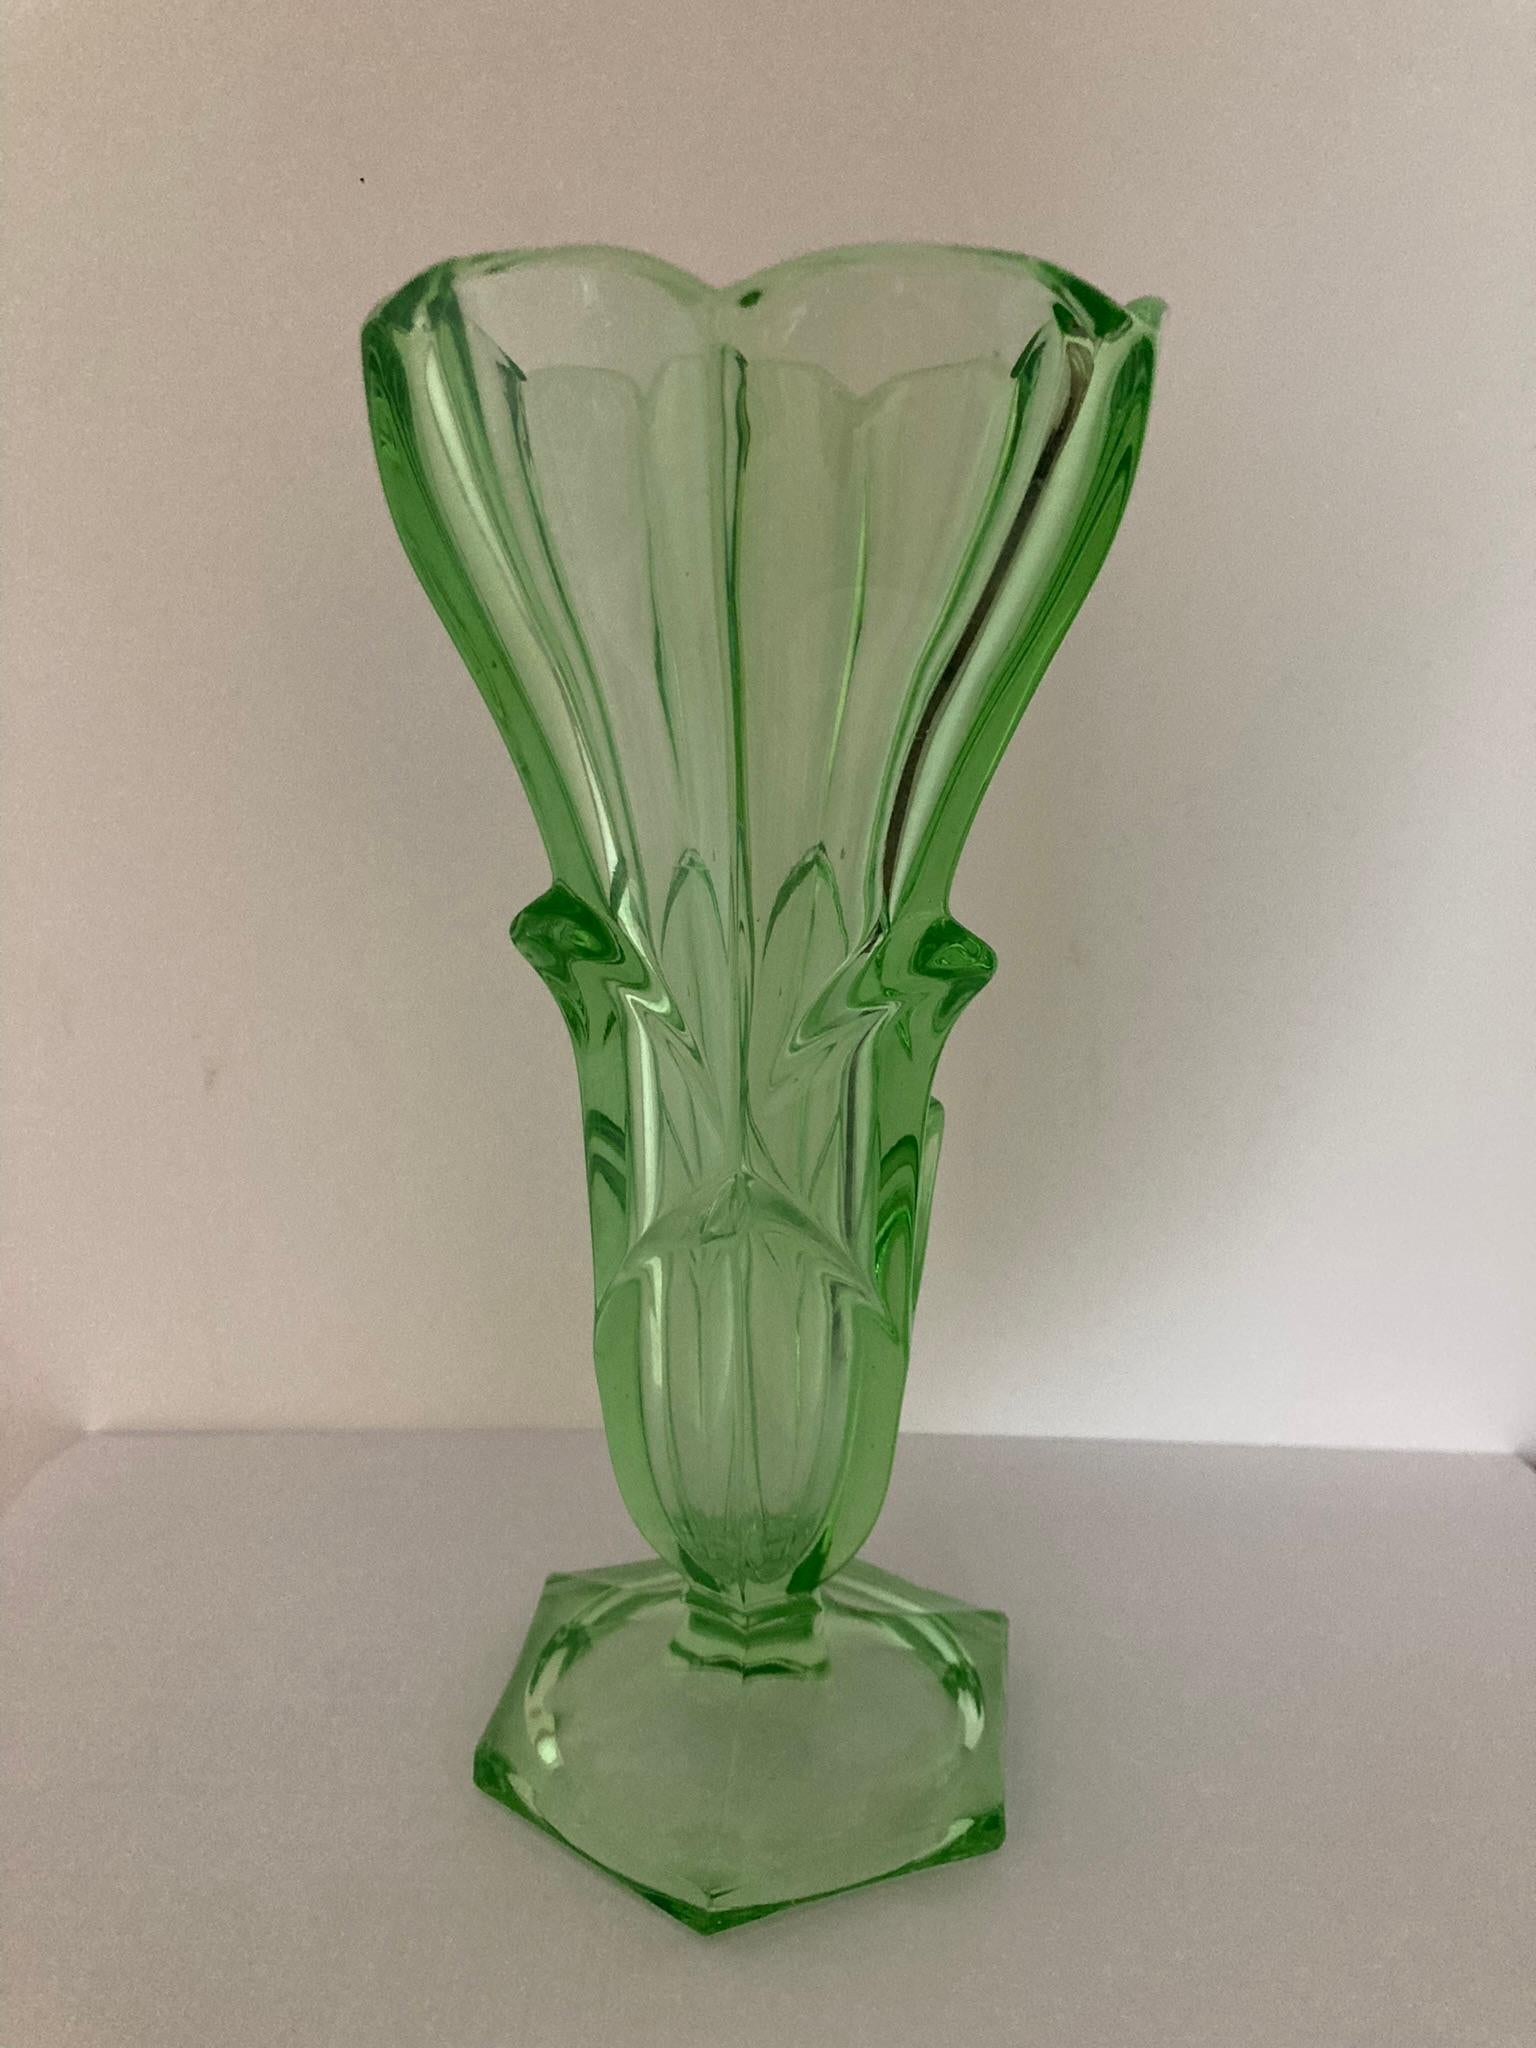 Eine exquisite Vase aus grünem Uranglas mit einem bezaubernden Blumendesign. Diese elegante Vase wurde mit Präzision gefertigt und verleiht jedem Raum einen Hauch von Raffinesse. Der leuchtende Grünton ergänzt das filigrane Blumenmuster und sorgt